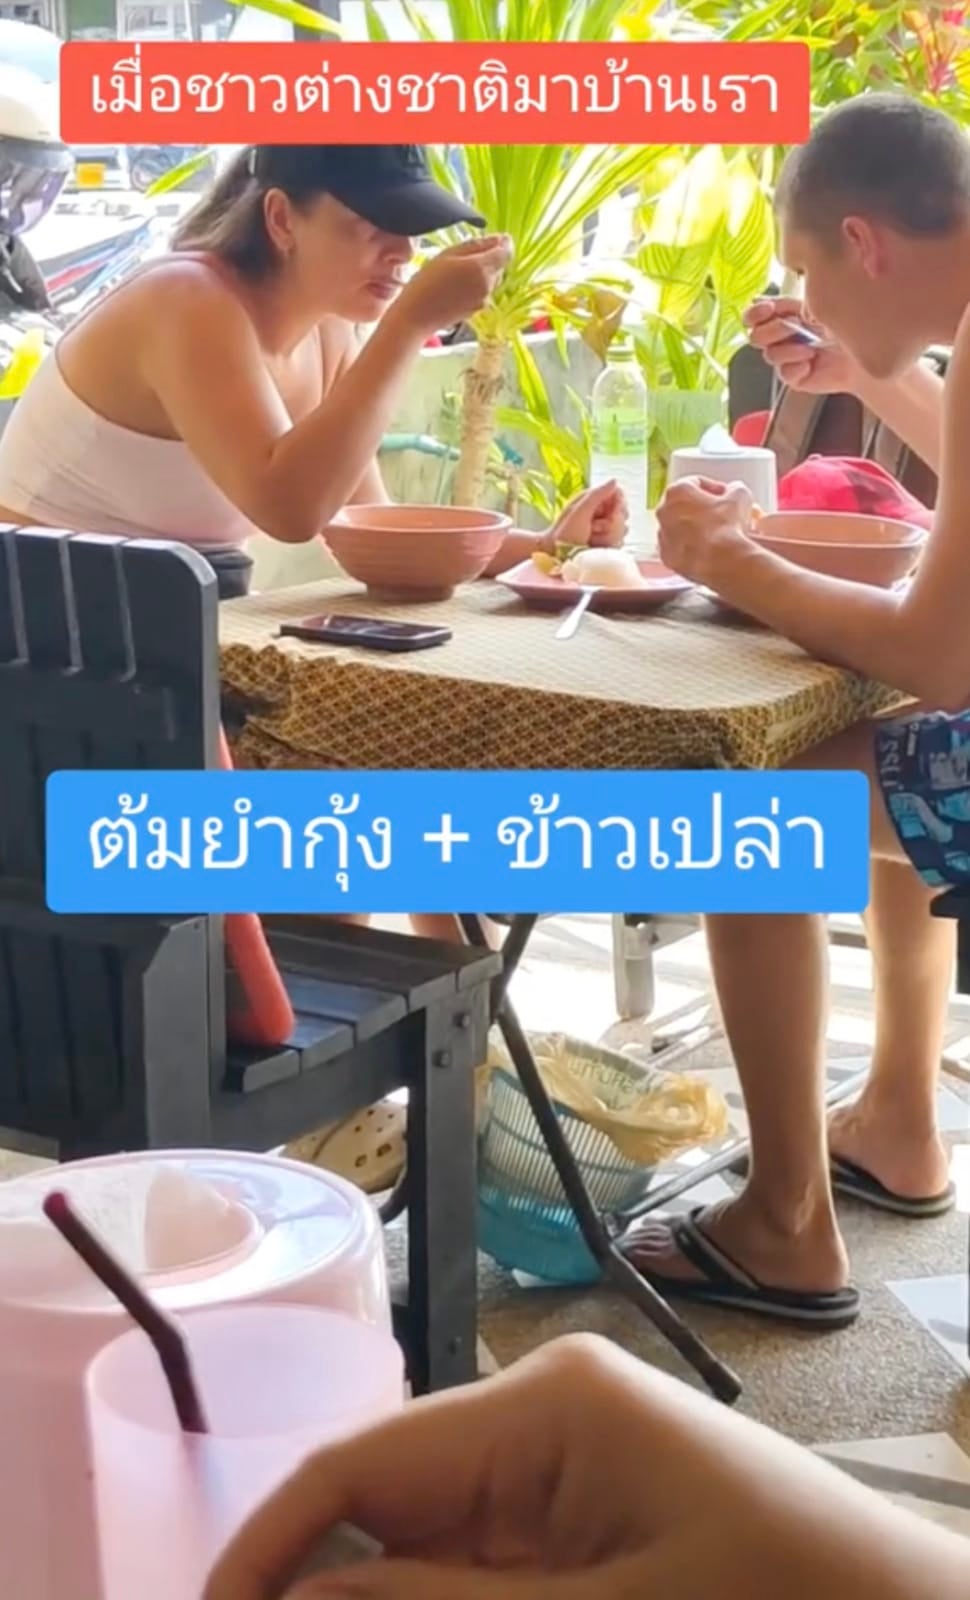 คลิปชาวต่างชาติกินต้มยำกุ้งของไทย TikTok